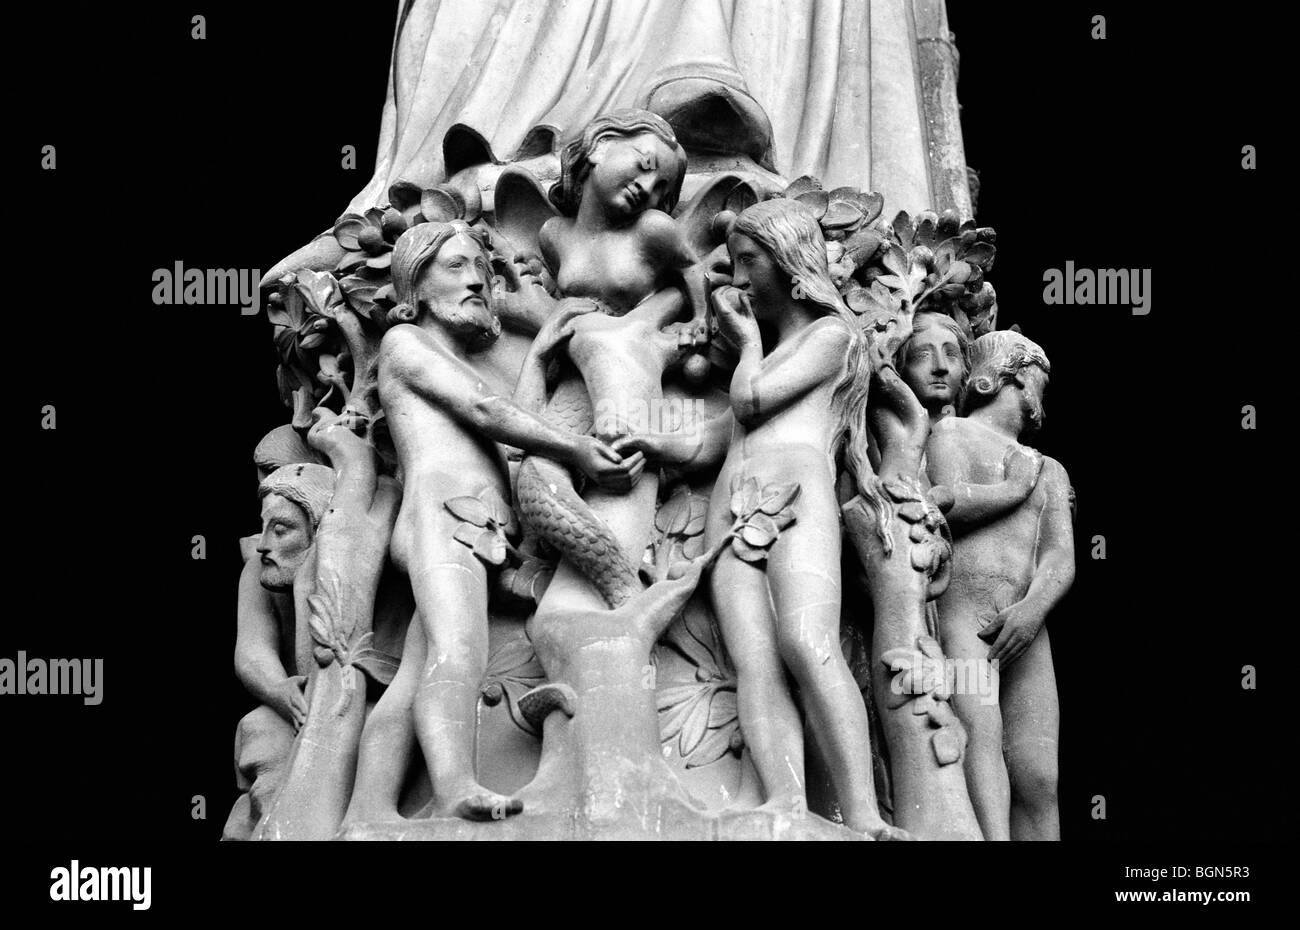 Adam und Eva Skulptur am Eingang zur Kathedrale Notre-Dame Paris Frankreich  Stockfotografie - Alamy